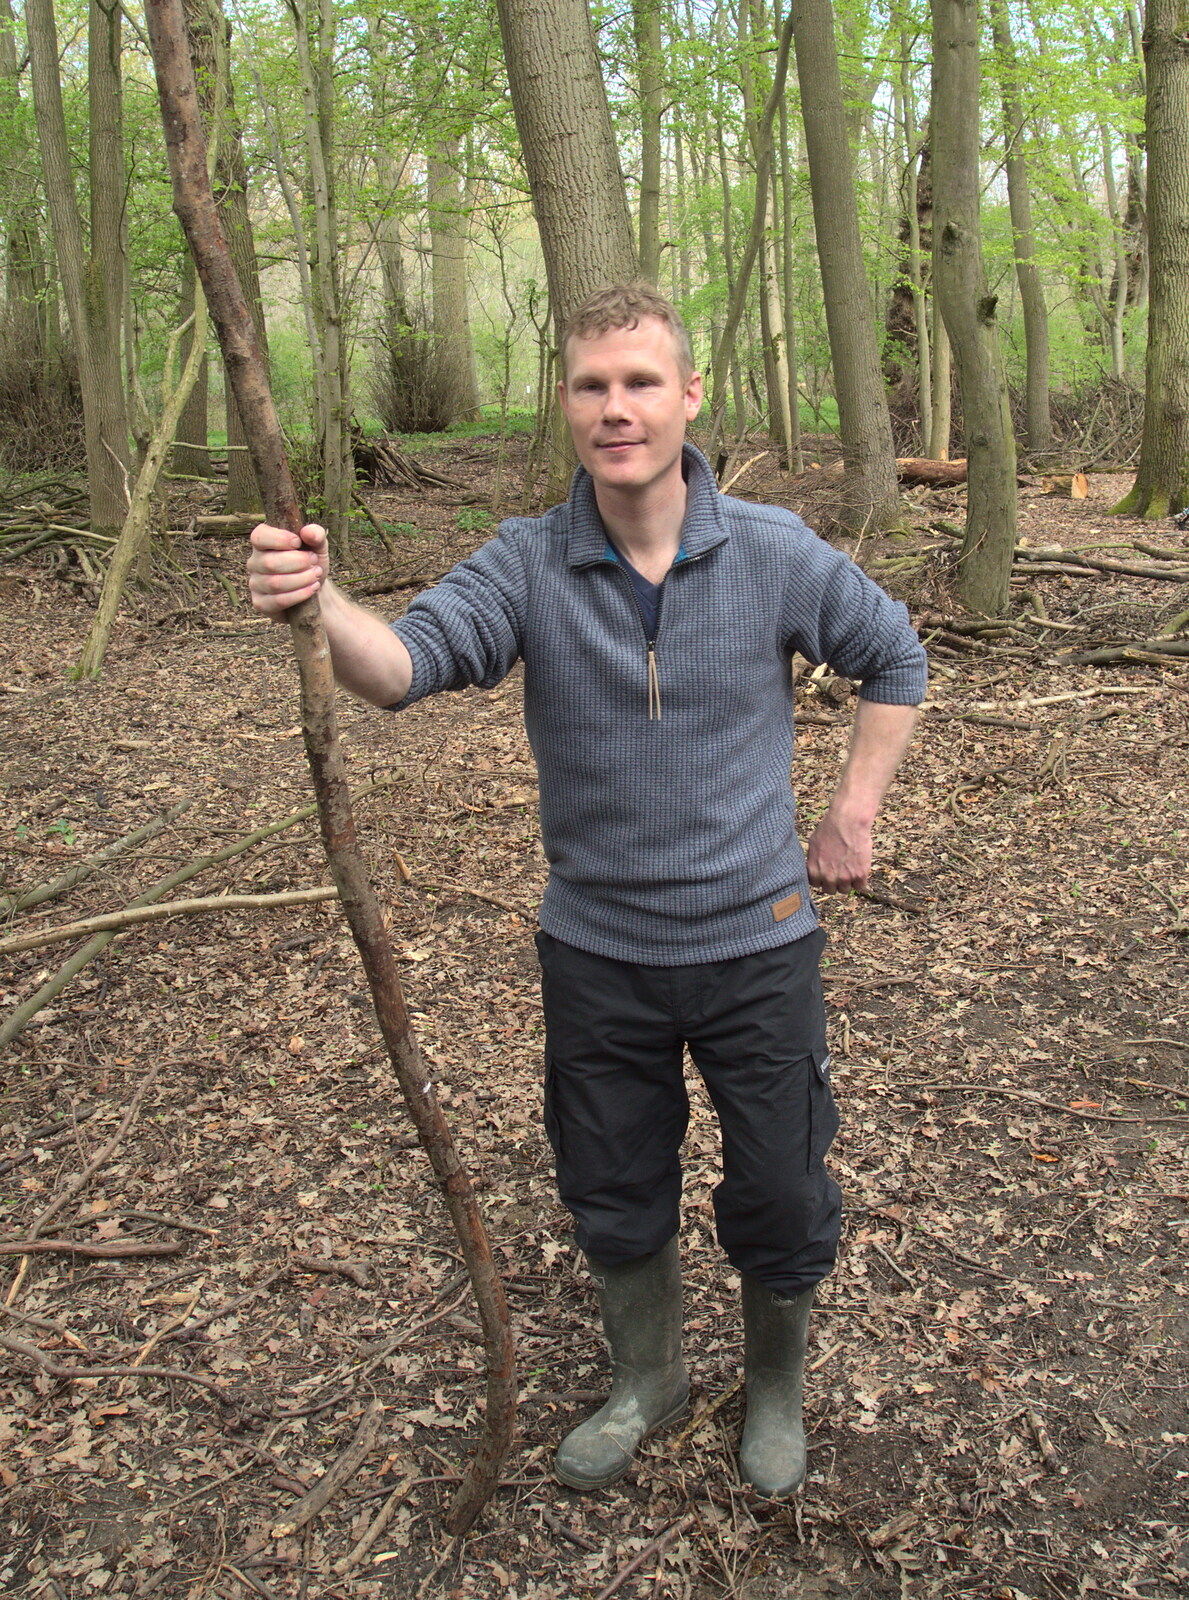 Mikey P's got a big stick from Making Dens: Rosie's Birthday, Thornham, Suffolk - 25th April 2015